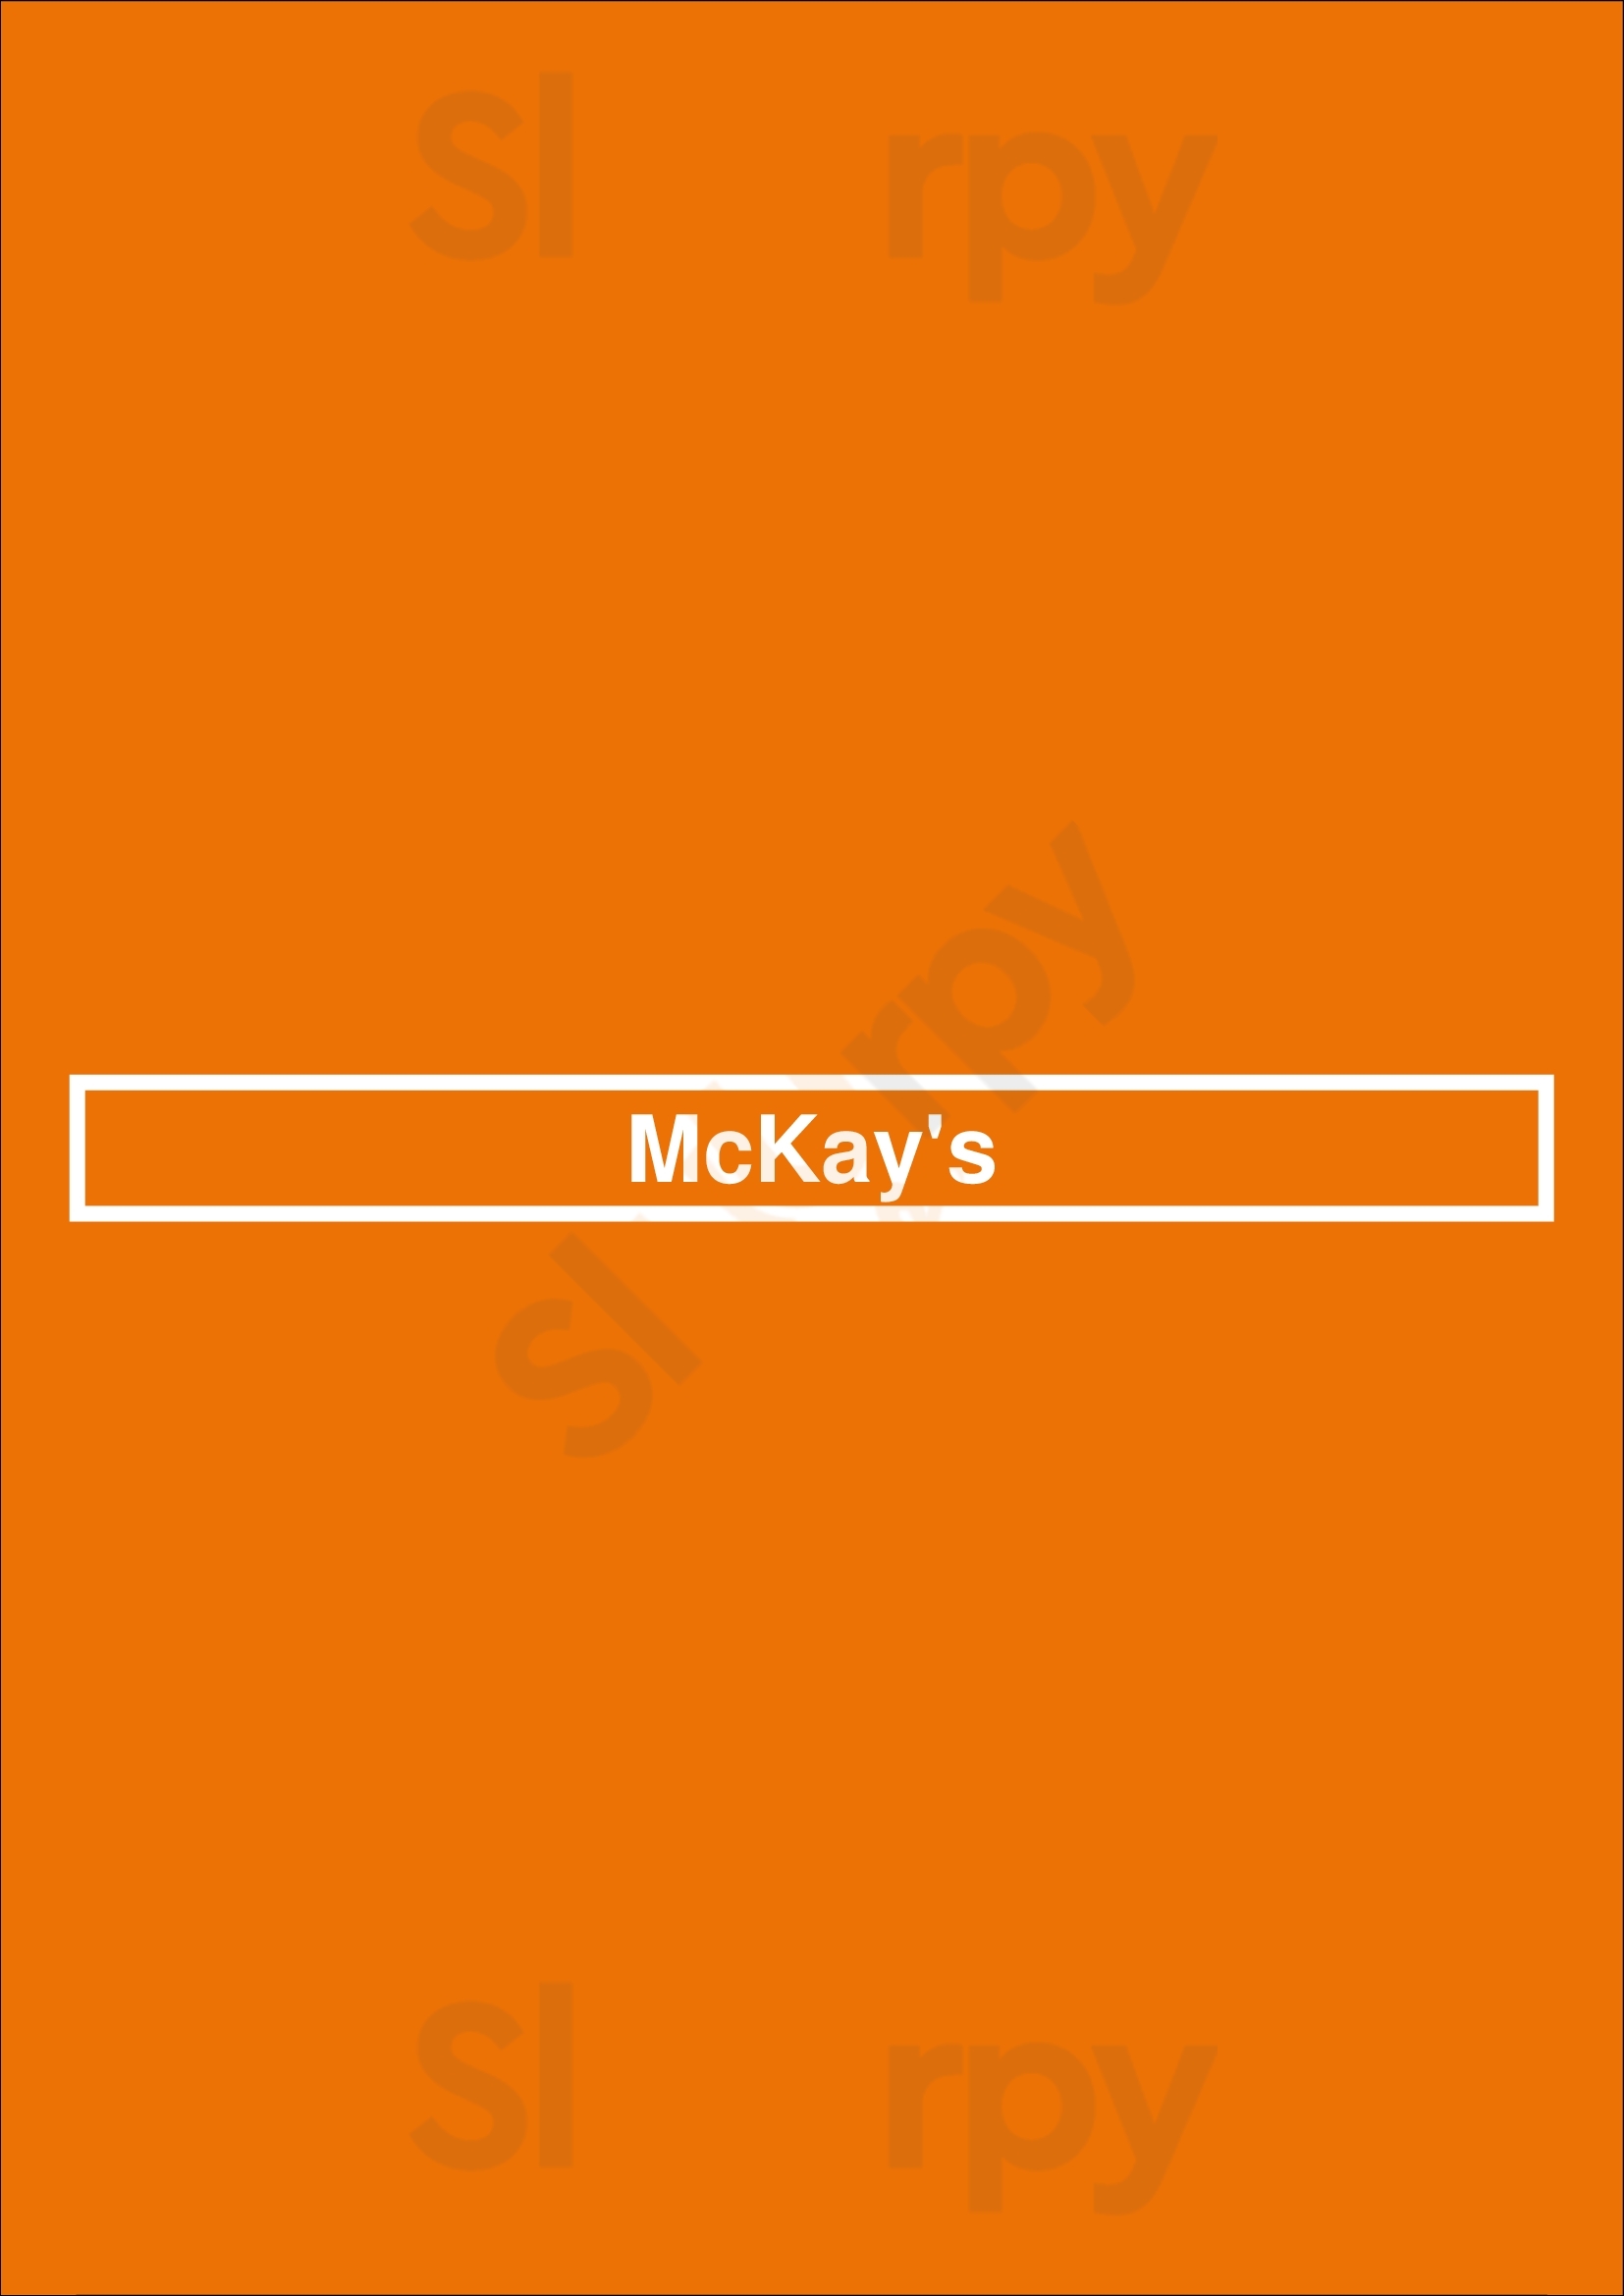 Mckay's Los Angeles Menu - 1